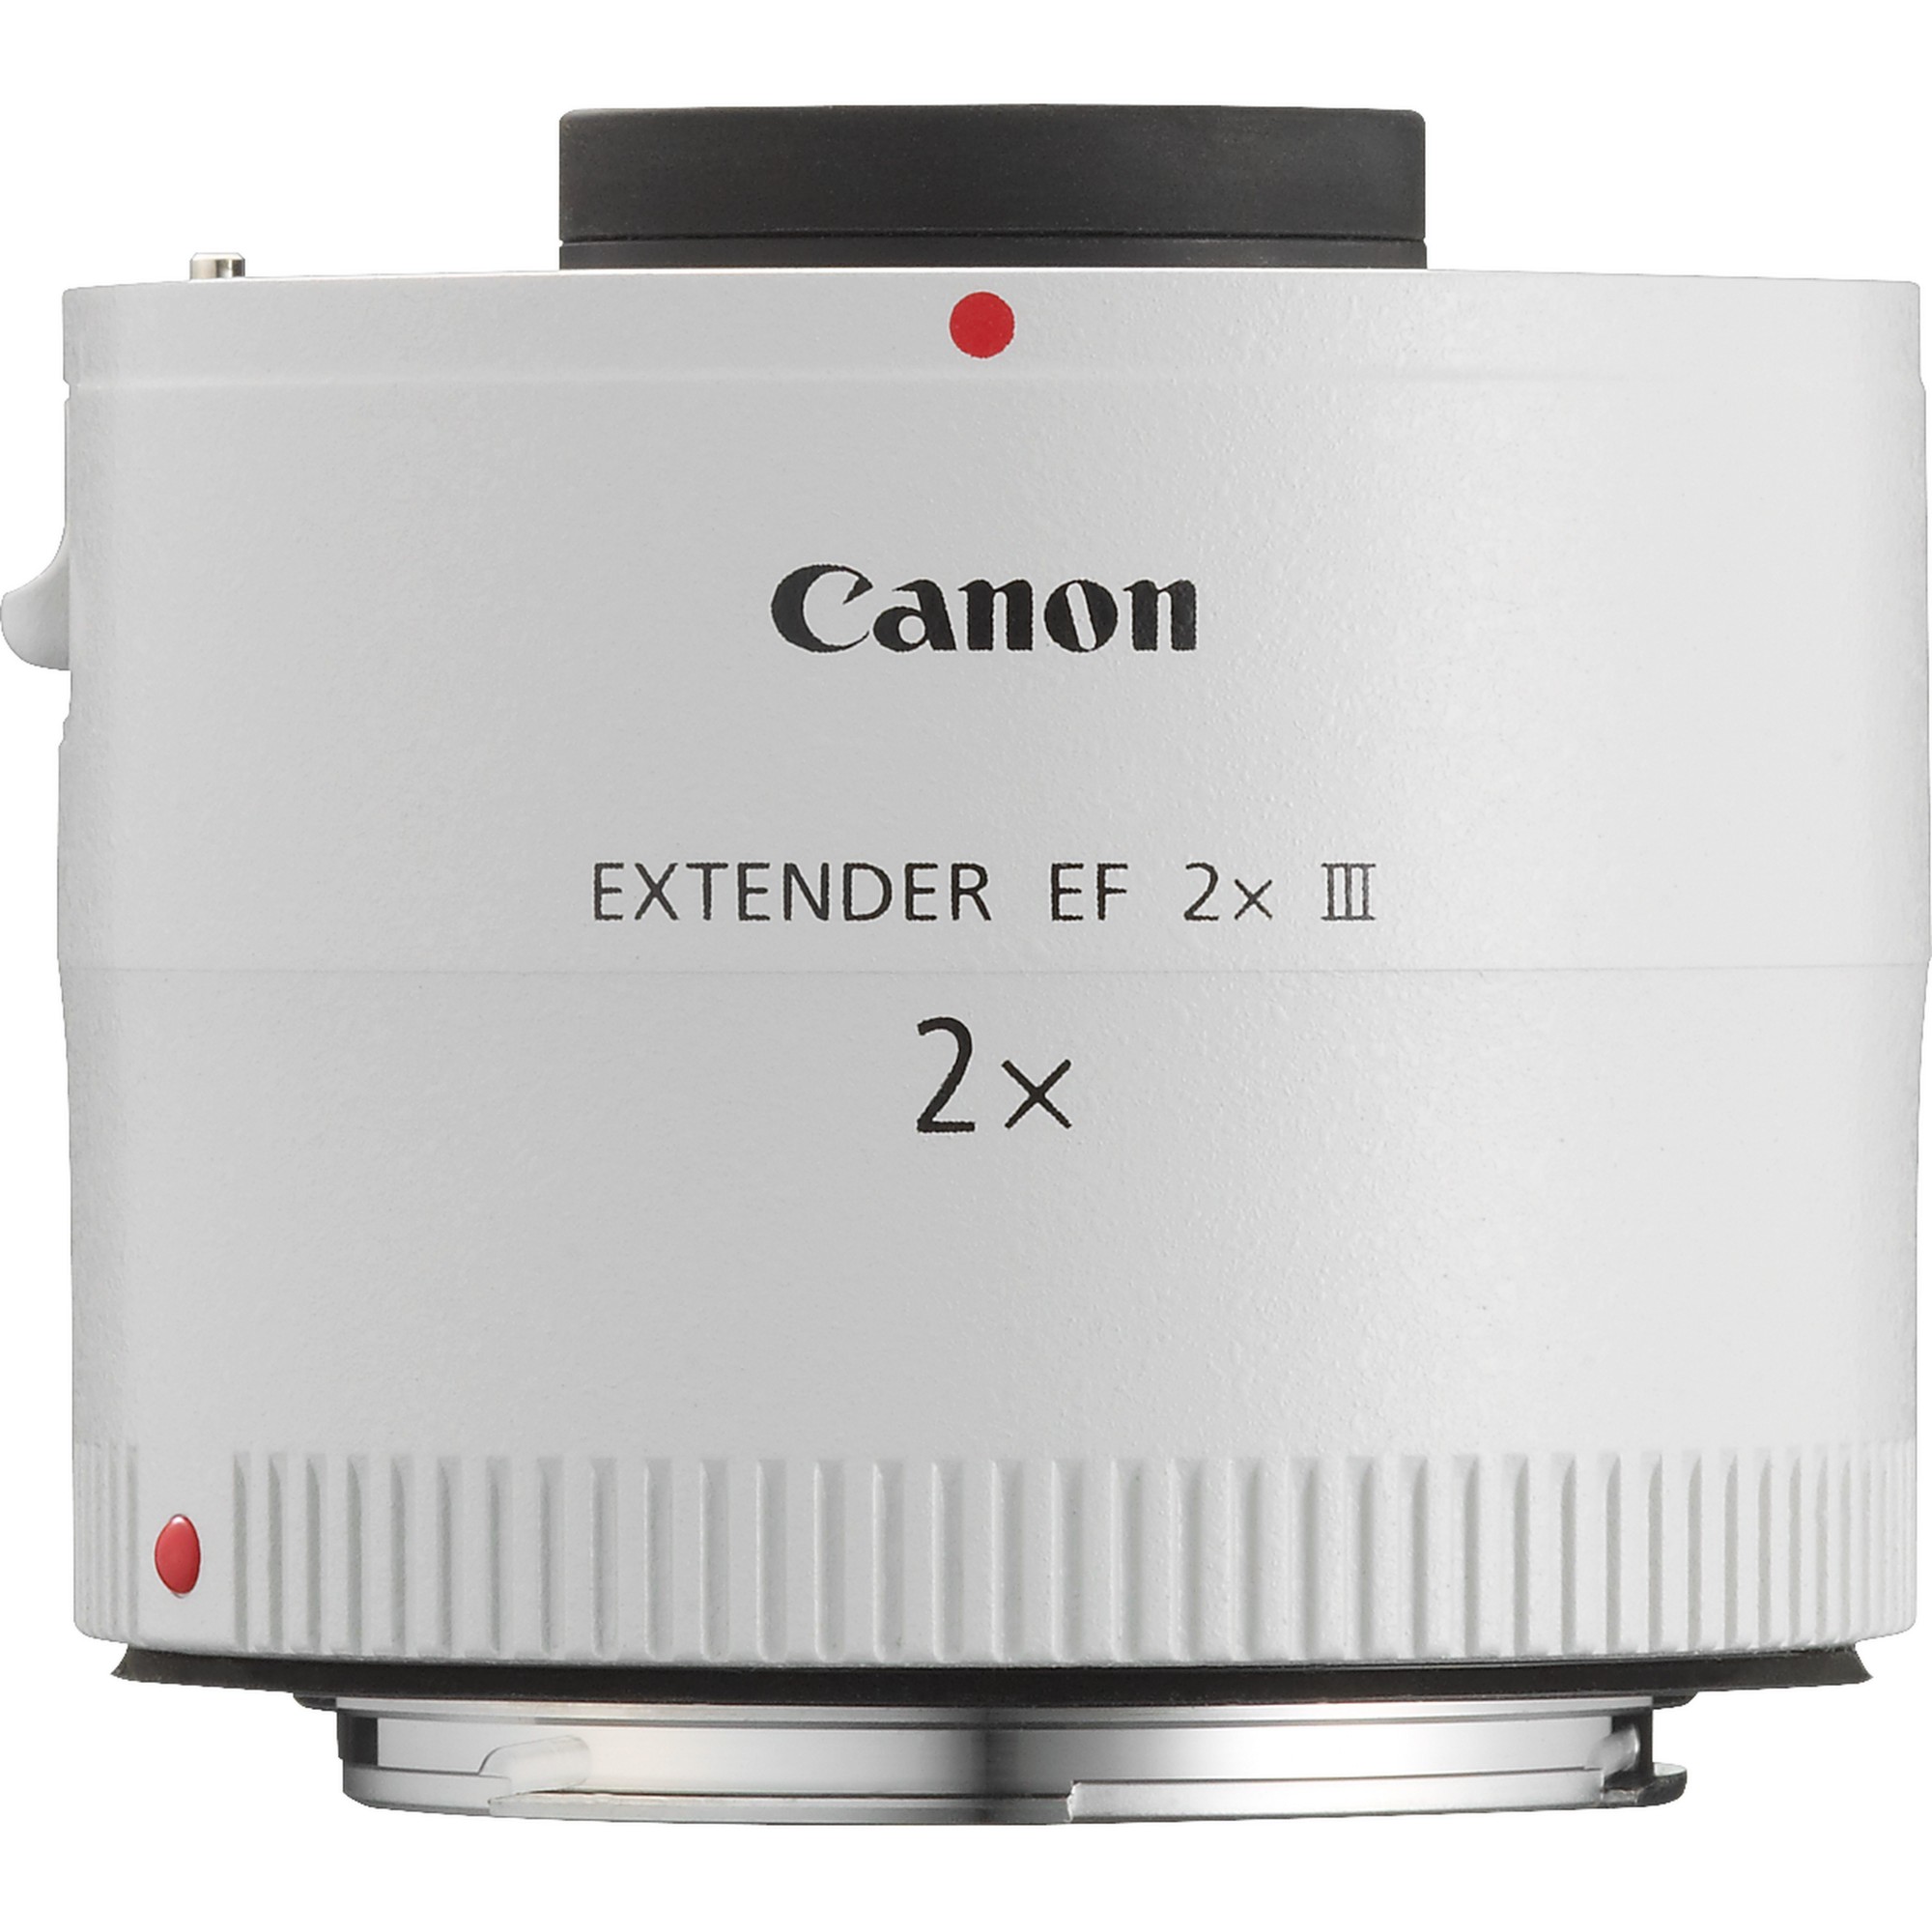 Photos - Camera Lens Canon Extender EF 2x III 4410B005 